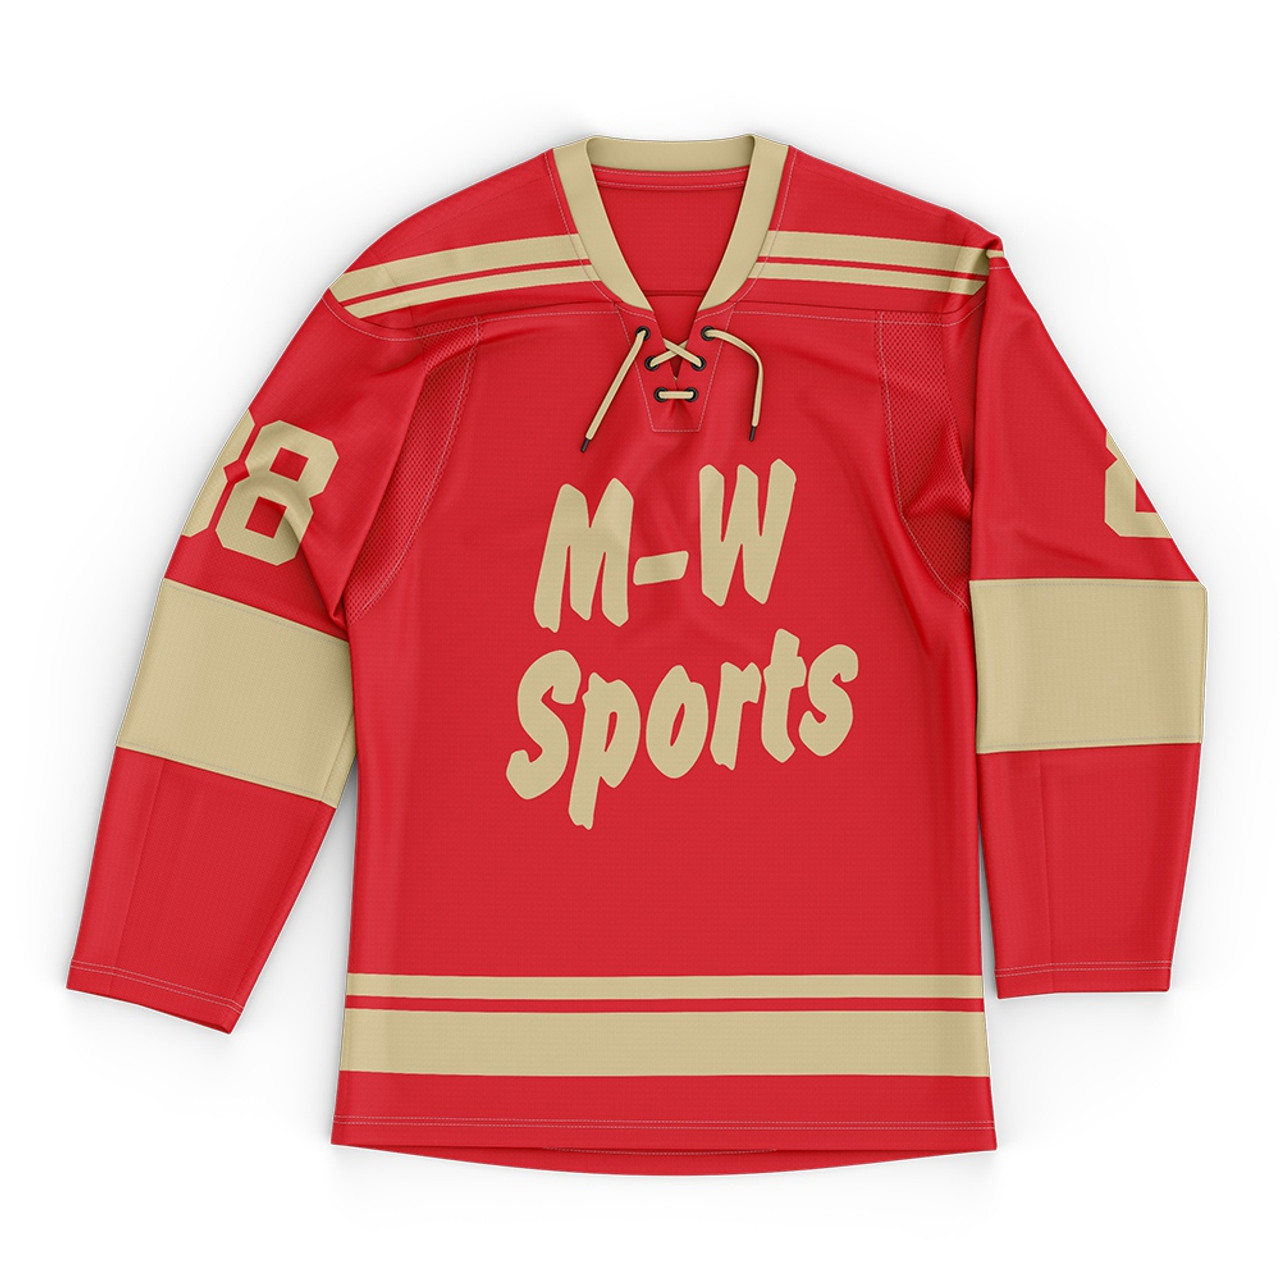 Wholesale Cheap Custom Sublimation Shirts Men Ice Hockey Jerseys